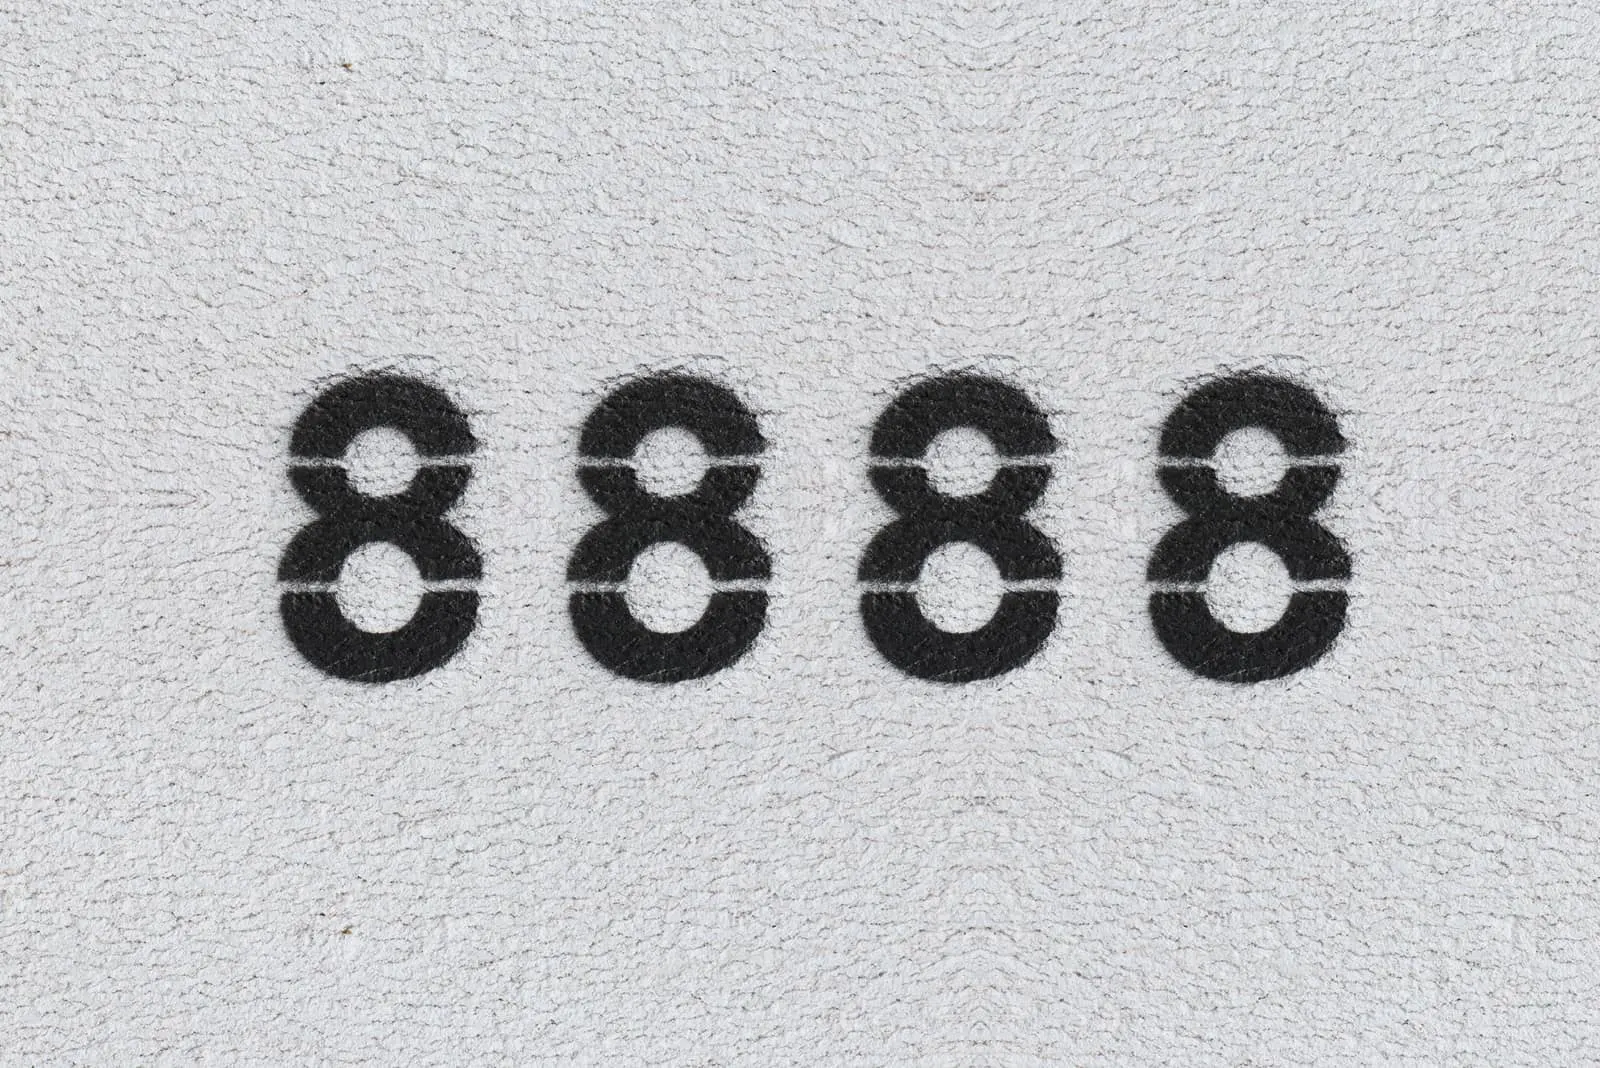 schwarze Zahlen 8888 auf grauem Hintergrund